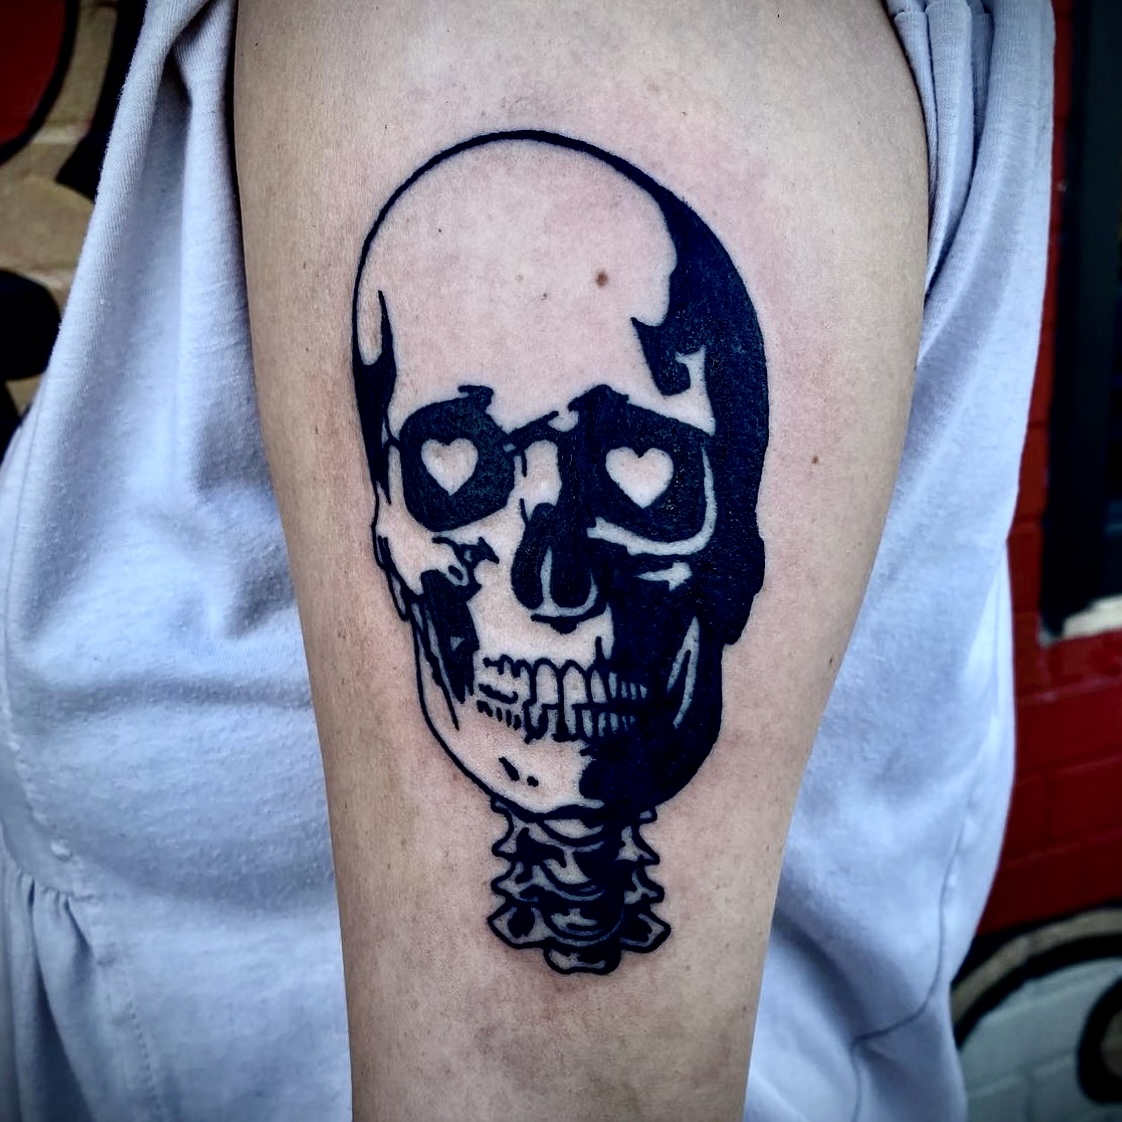 tattoo of a skull from top Dallas tattoo shop